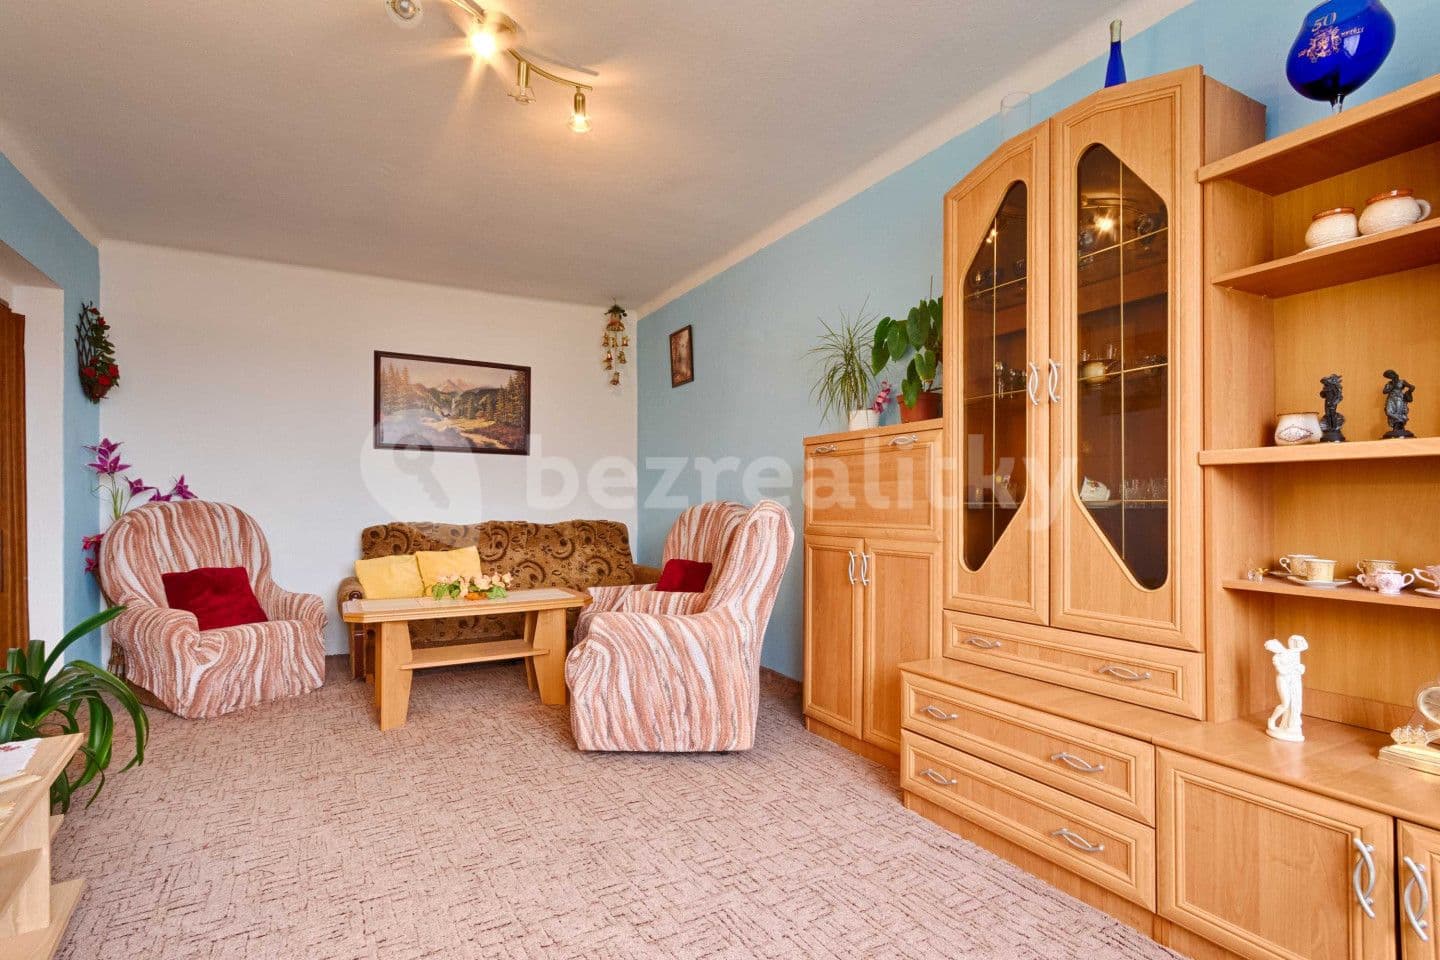 3 bedroom flat for sale, 60 m², Zhořec, Vysočina Region